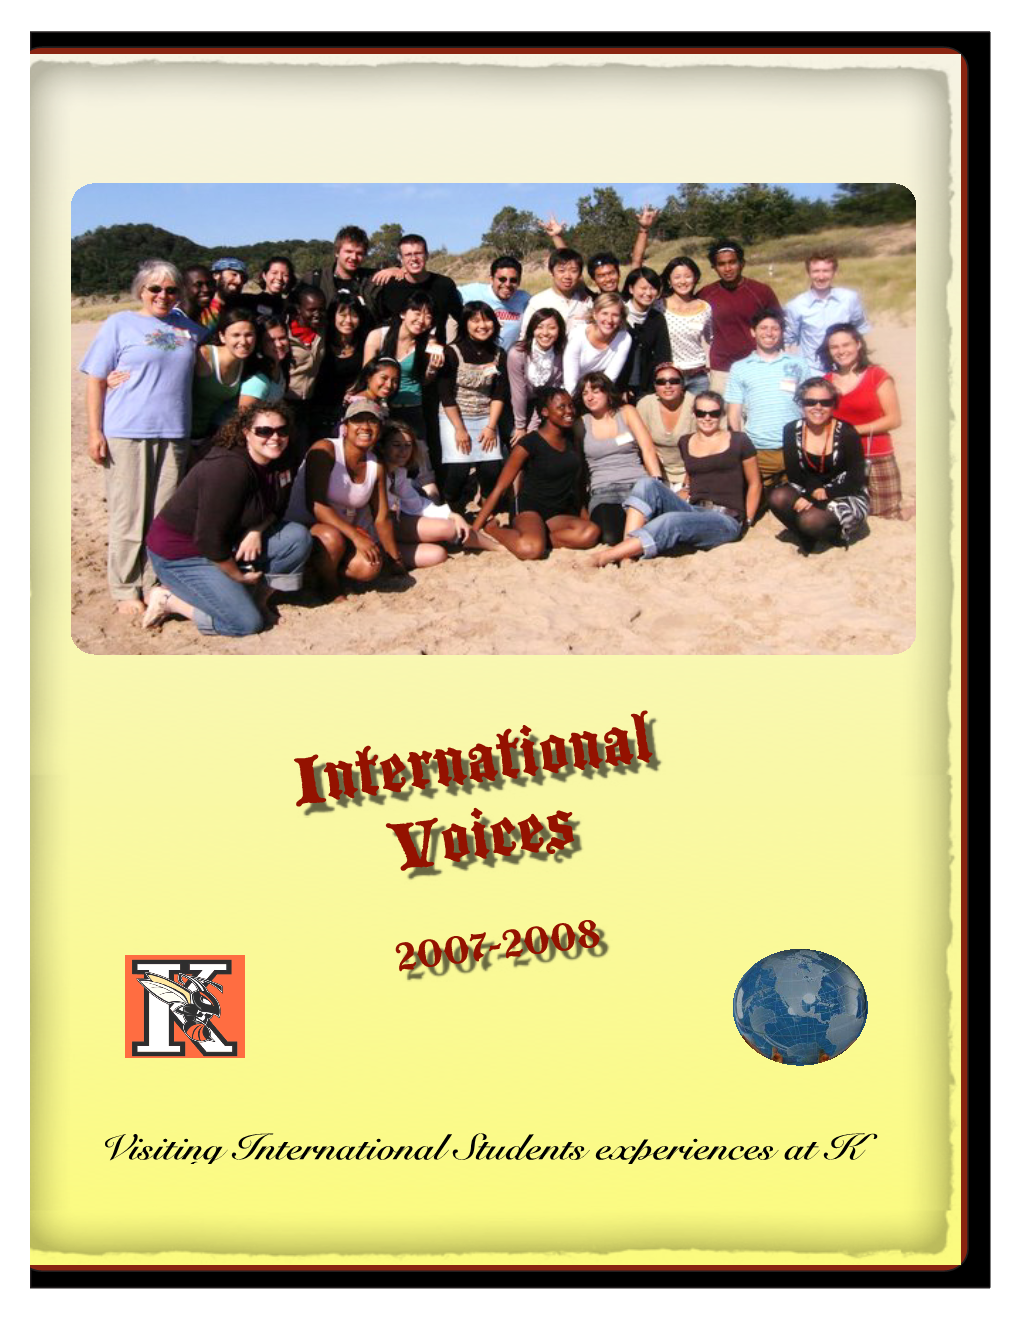 International Voices